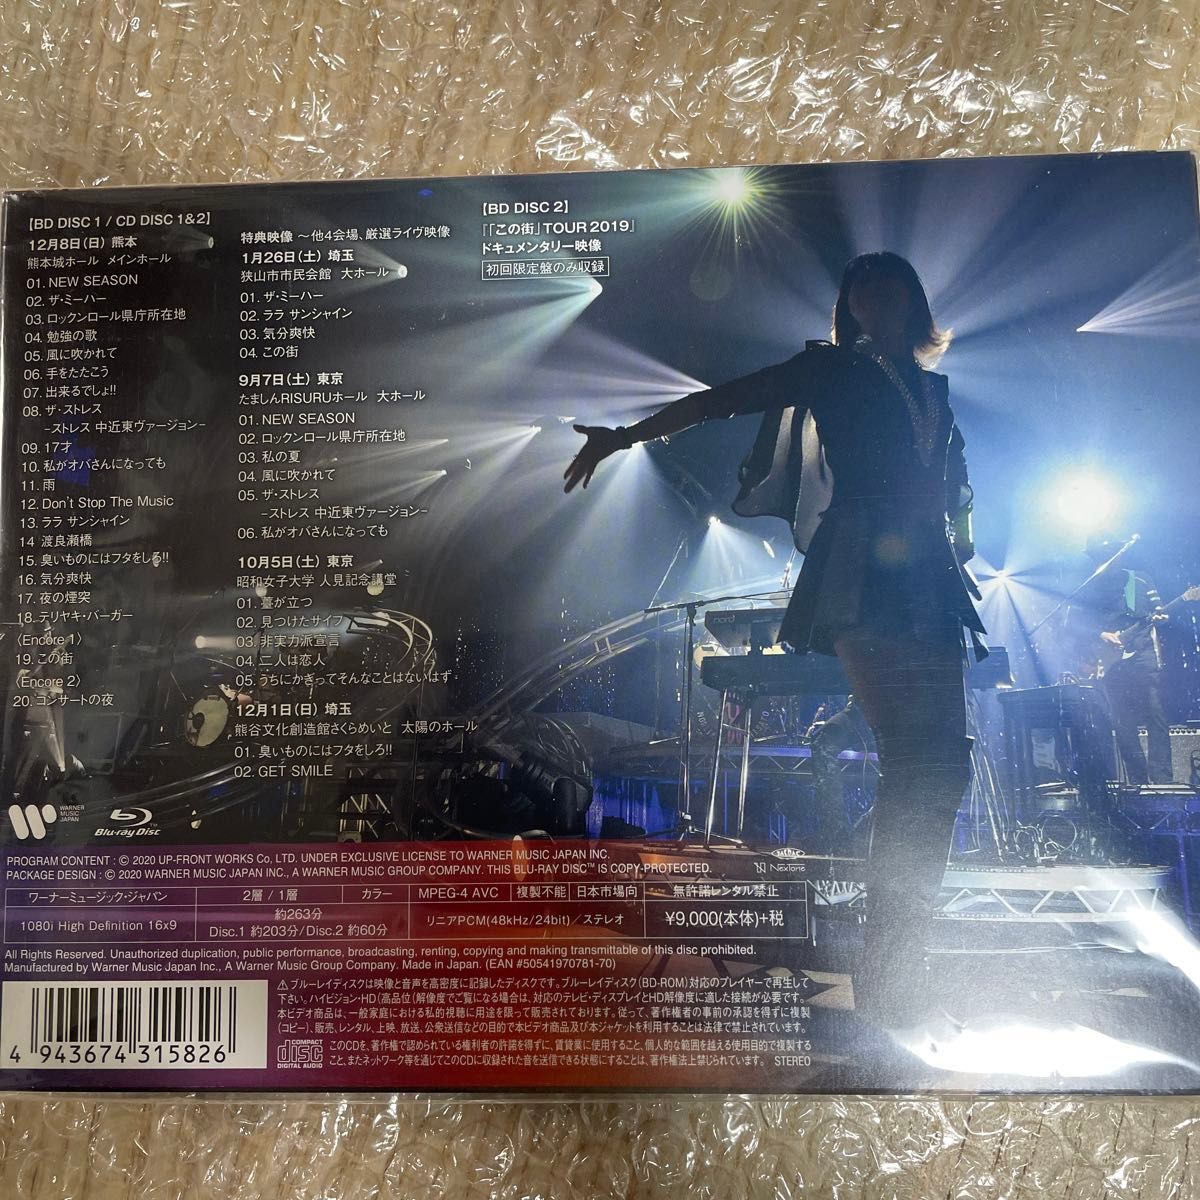 「この街」 TOUR 2019完全版 (三方背BOX仕様 2Blu-ray+2CD+フォトブックレット) (初回限定盤)